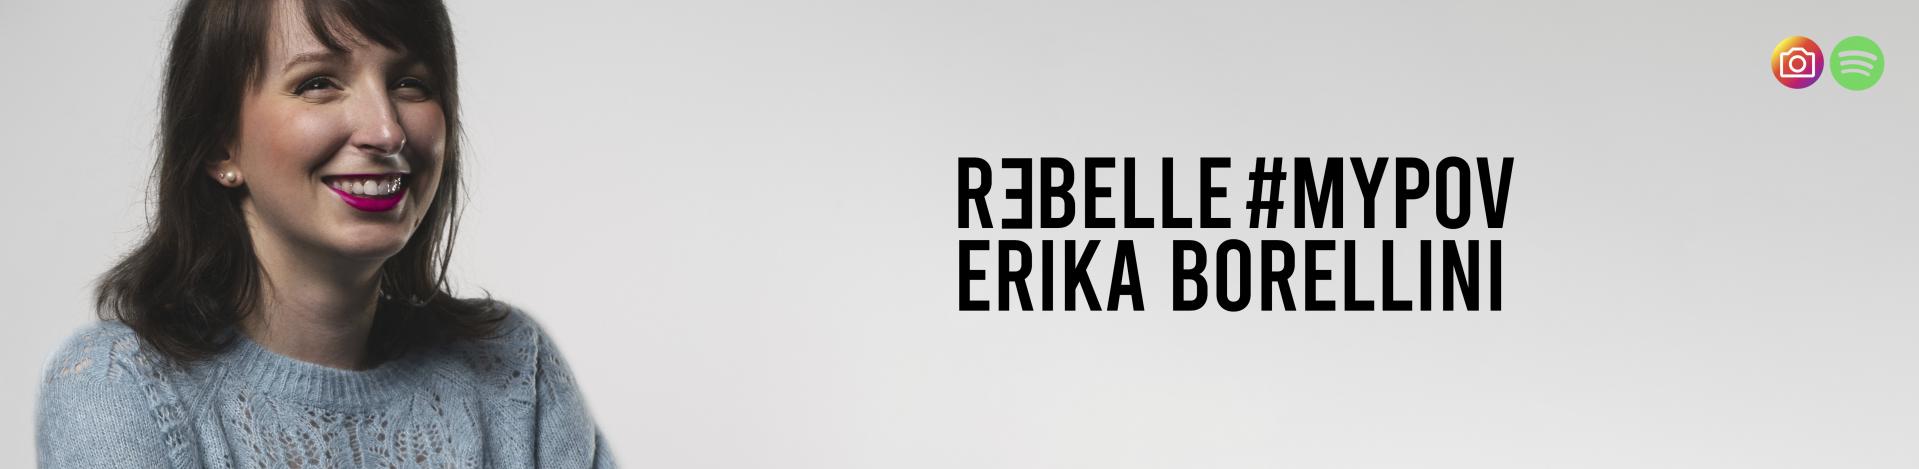 #MYPOV #MYDREAMS: ERIKA BORELLINI